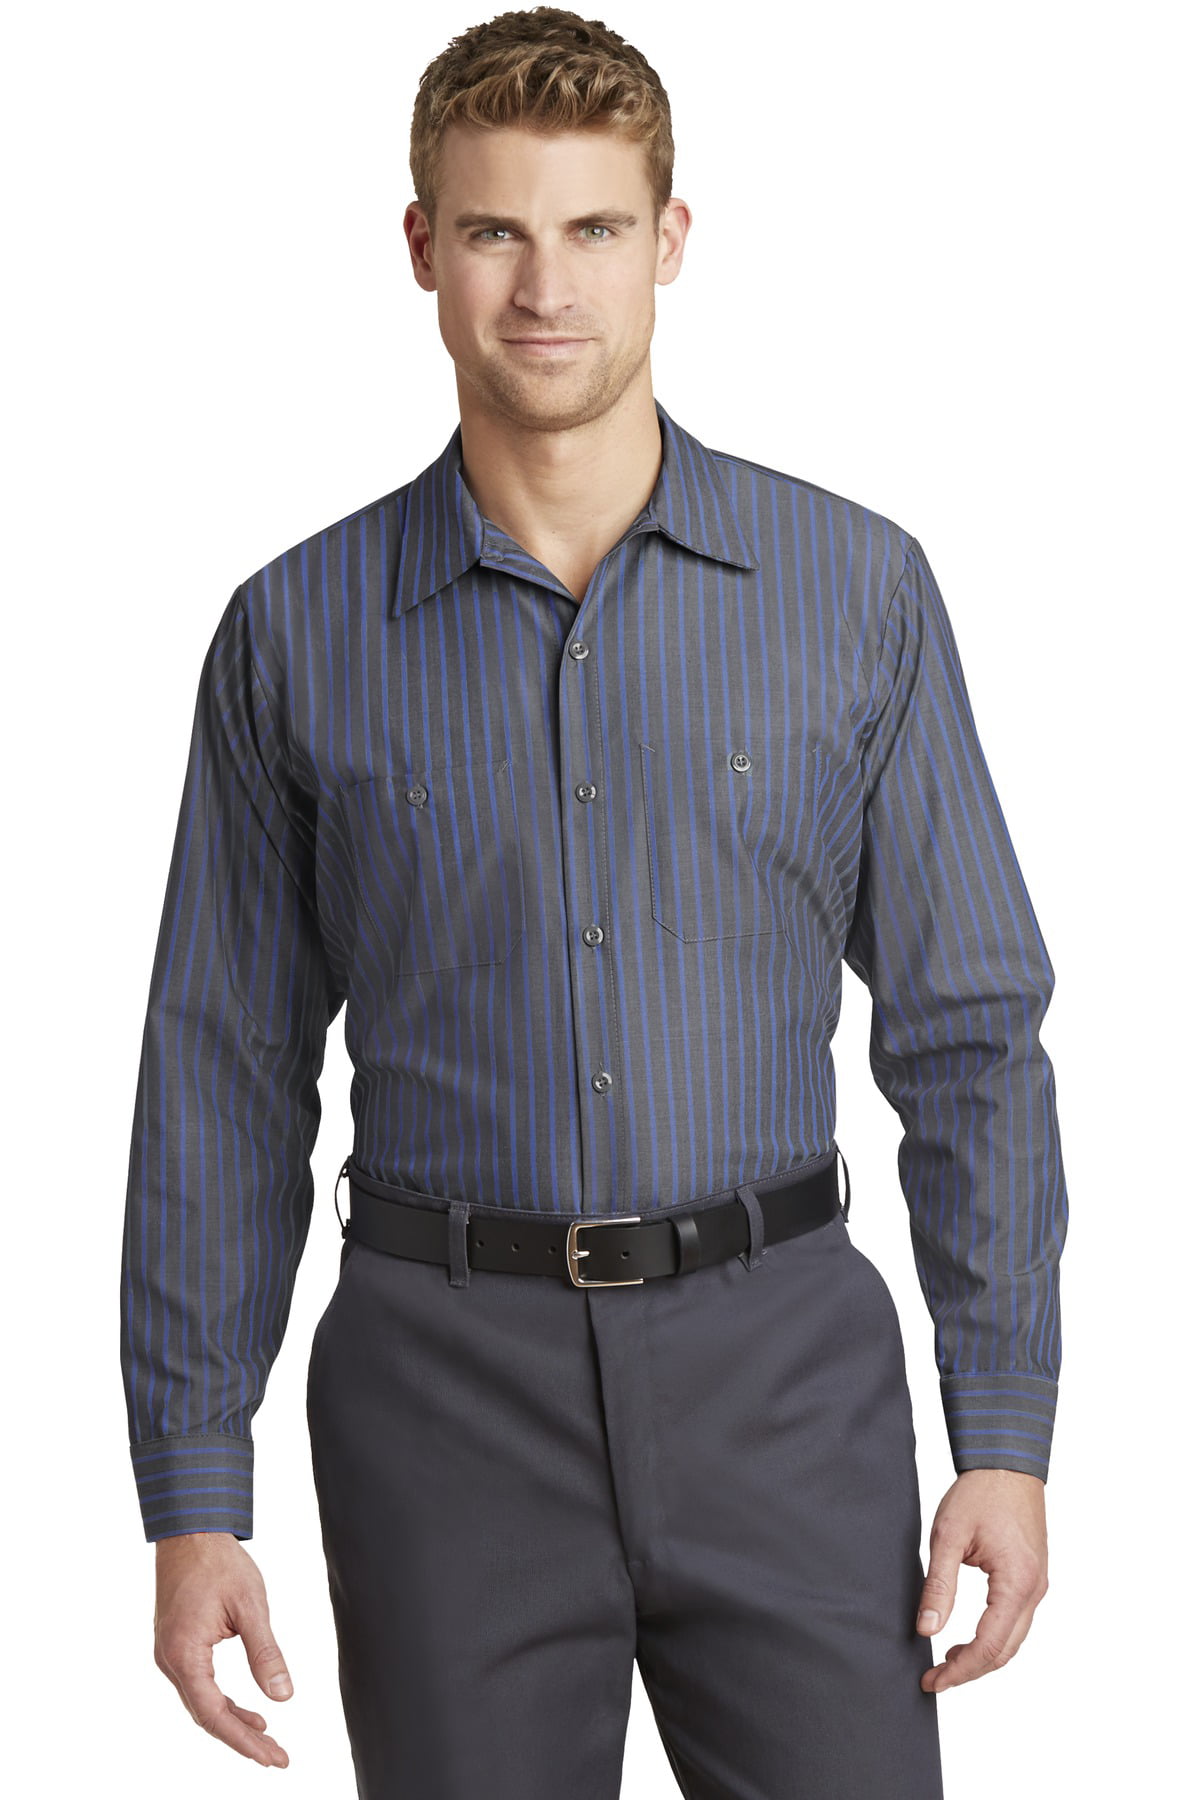 Long Sleeve Striped Industrial Work Shirt - Walmart.com